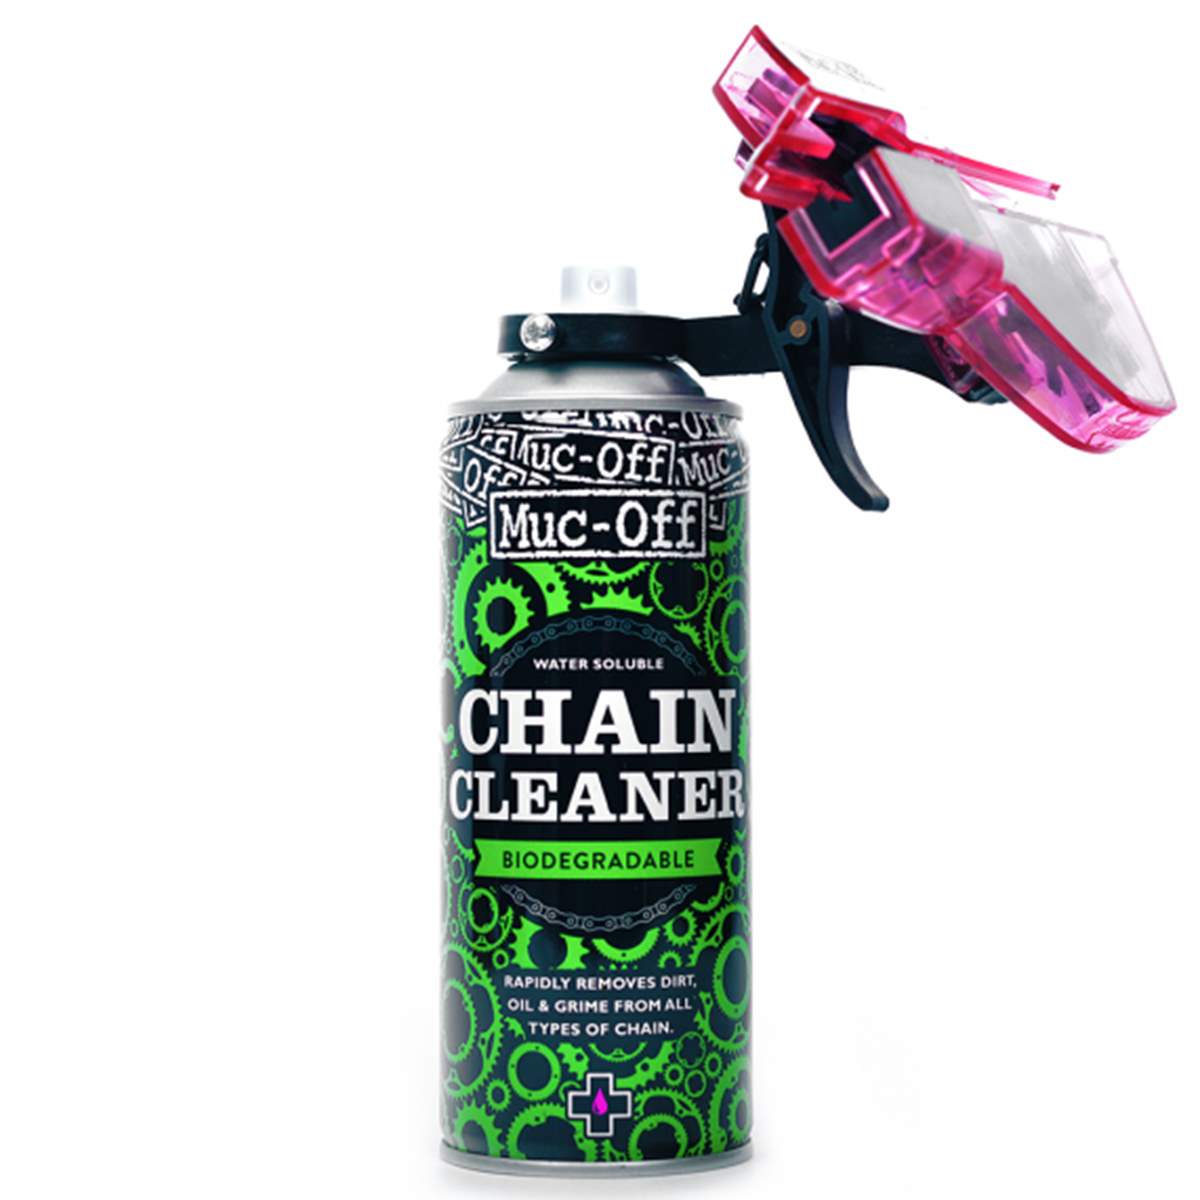 Muc-Off Nettoyeur de Chaîne Chain Doc avec Chain Cleaner Liquid, 400 ml